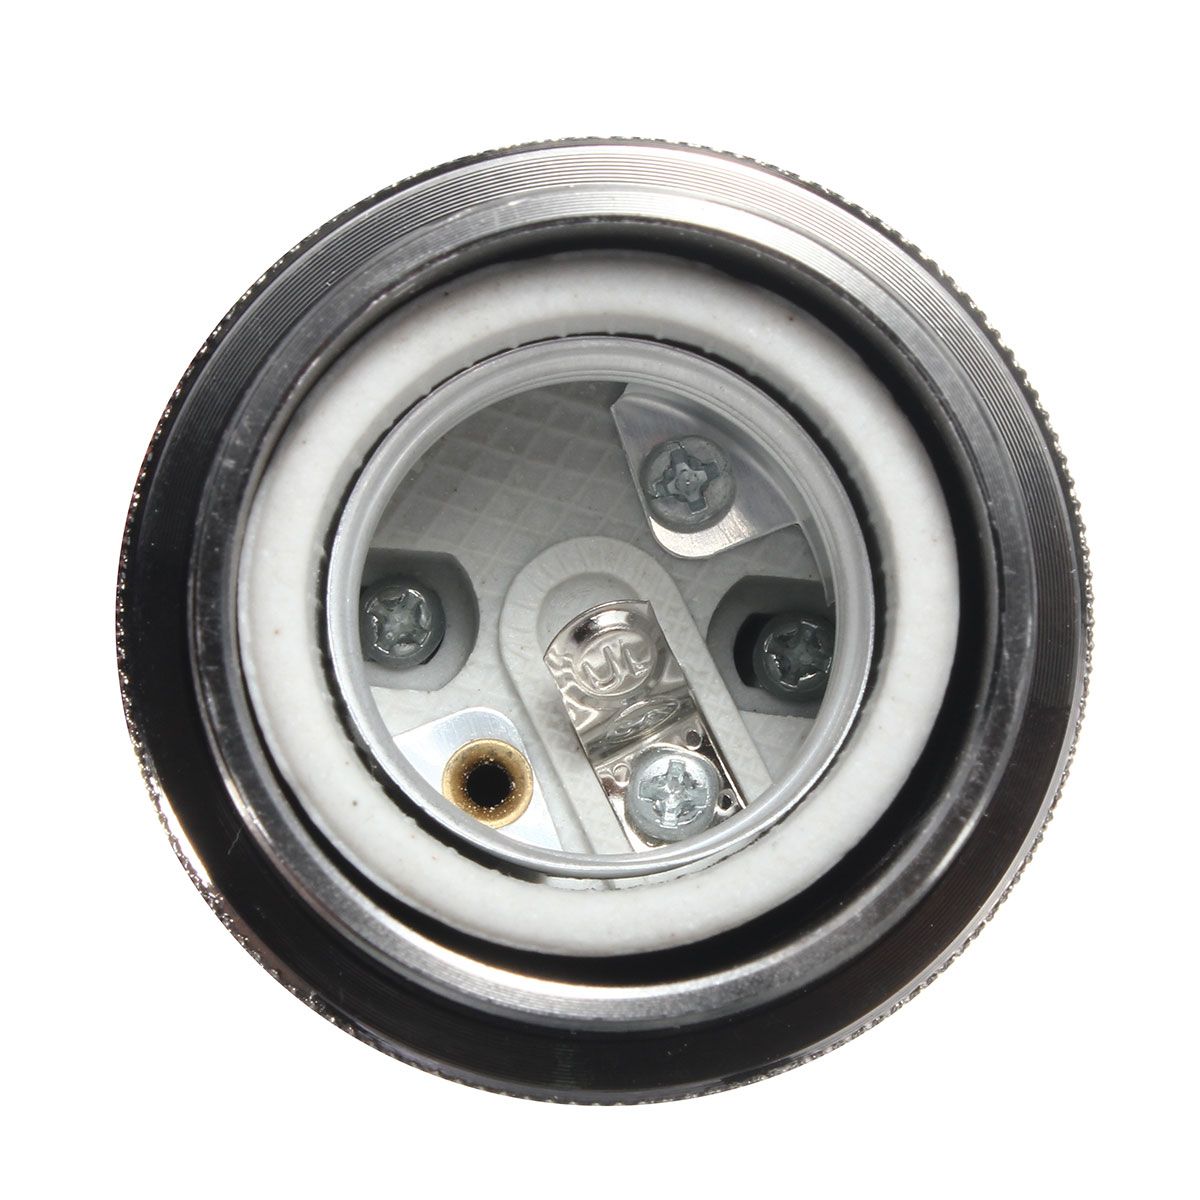 E27-Edison-Bulb-Adapter-Light-Socket-Lampholder-for-DIY-Handmade-Lamp-Pendant-AC110-250V-1431524